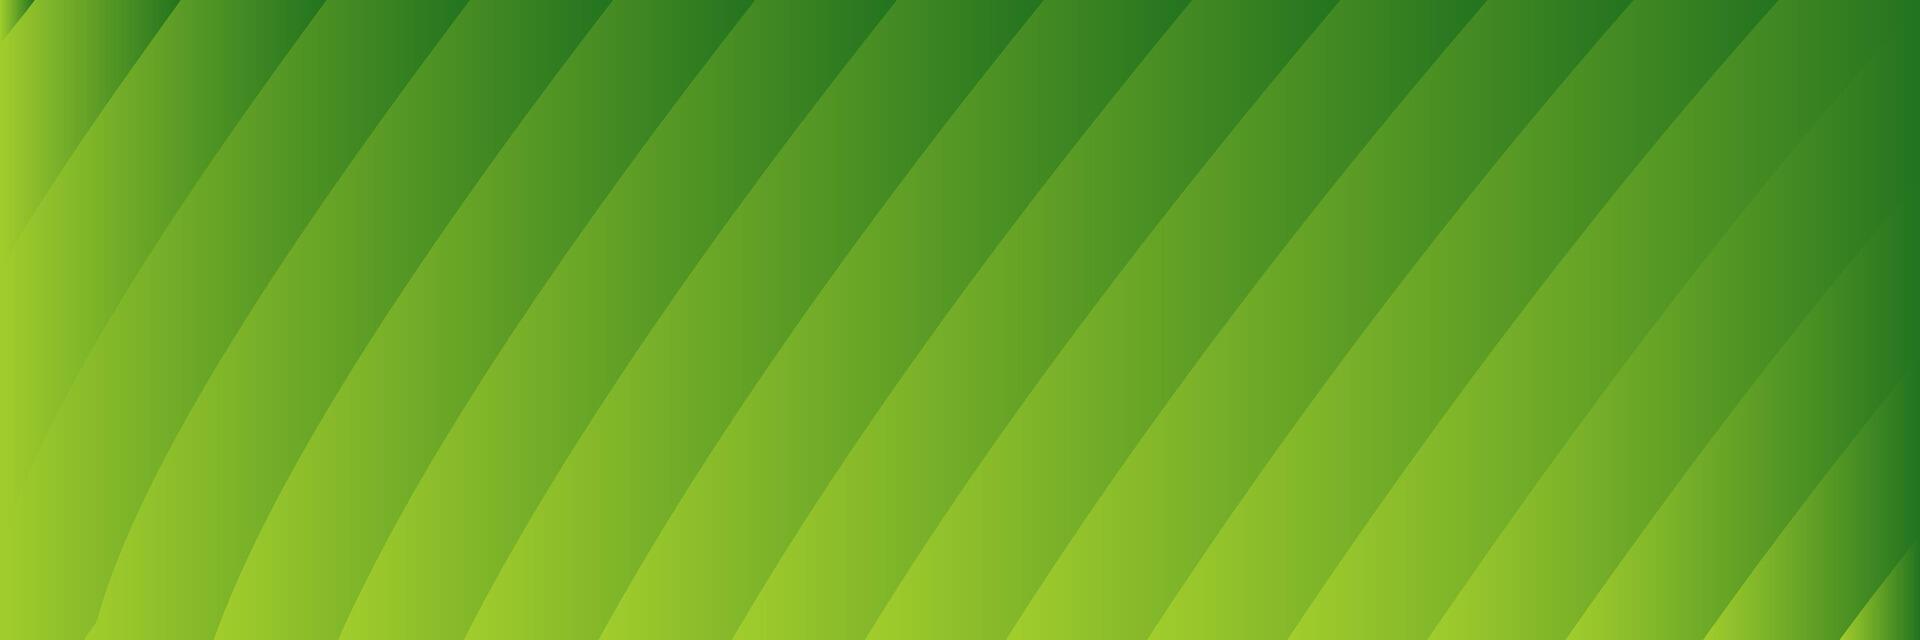 abstract elegant groen achtergrond met lijnen vector